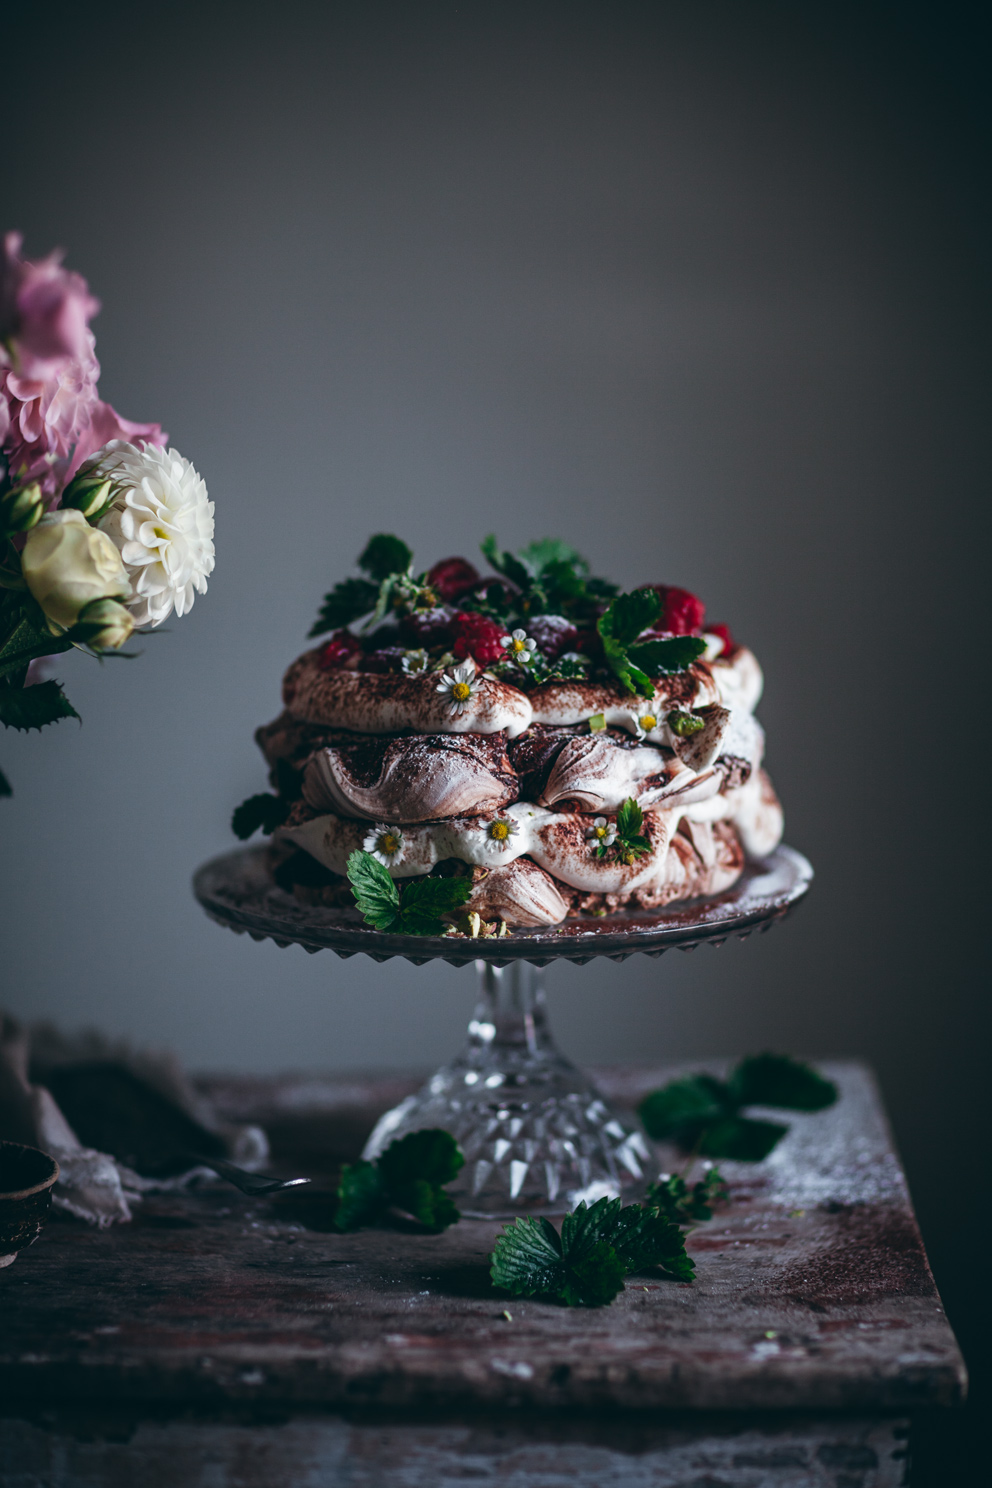 Chocolate Swirl Pavlova with Whipped Cream and Raspberries 5